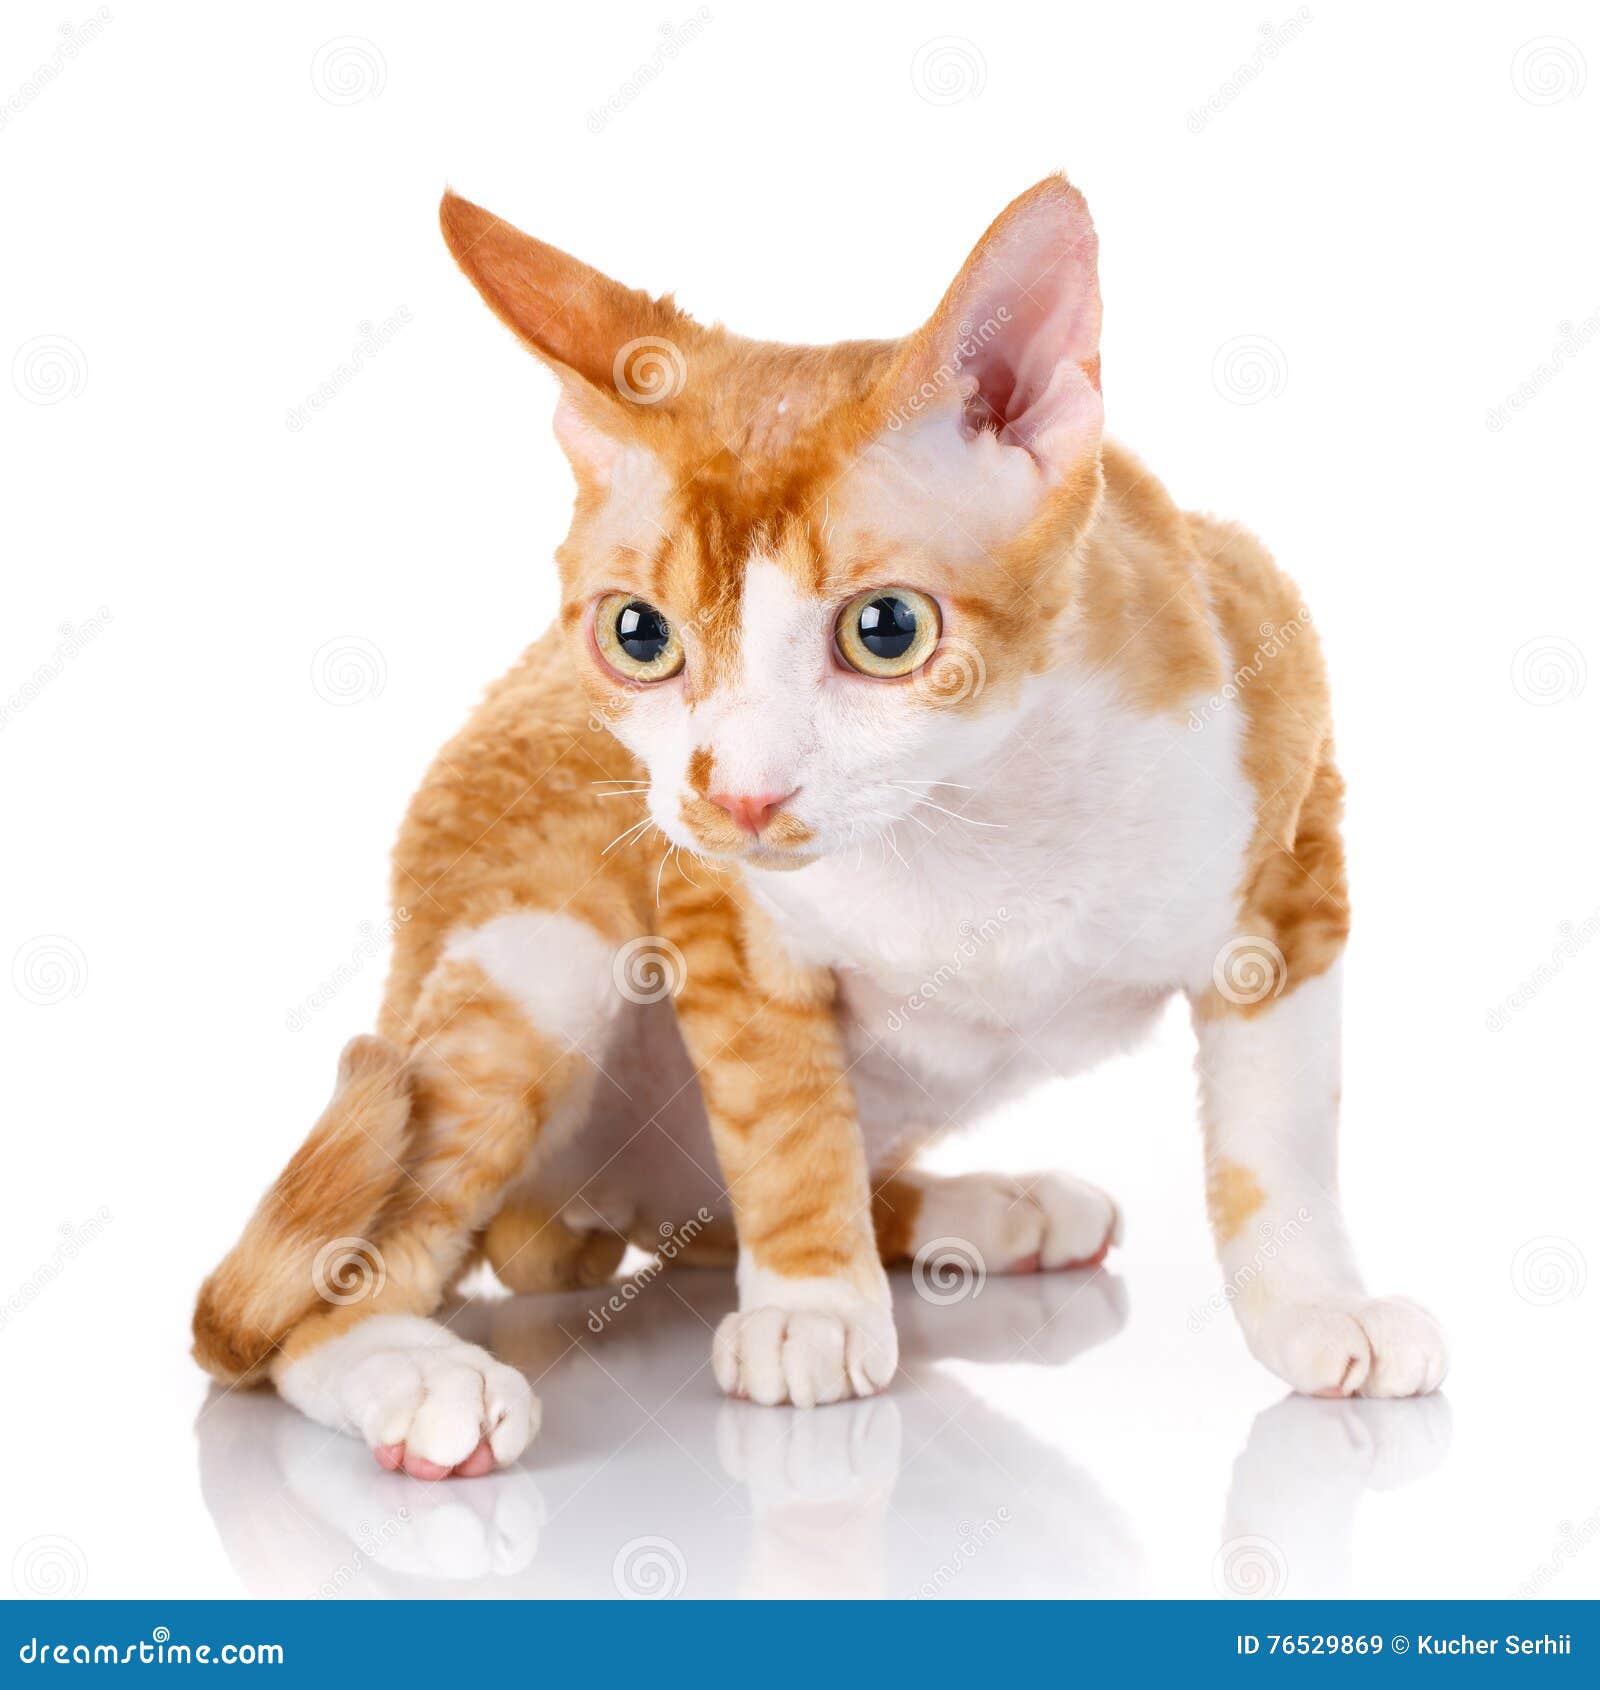  Orange Devon Rex  Cat With Big Ears On White Background 